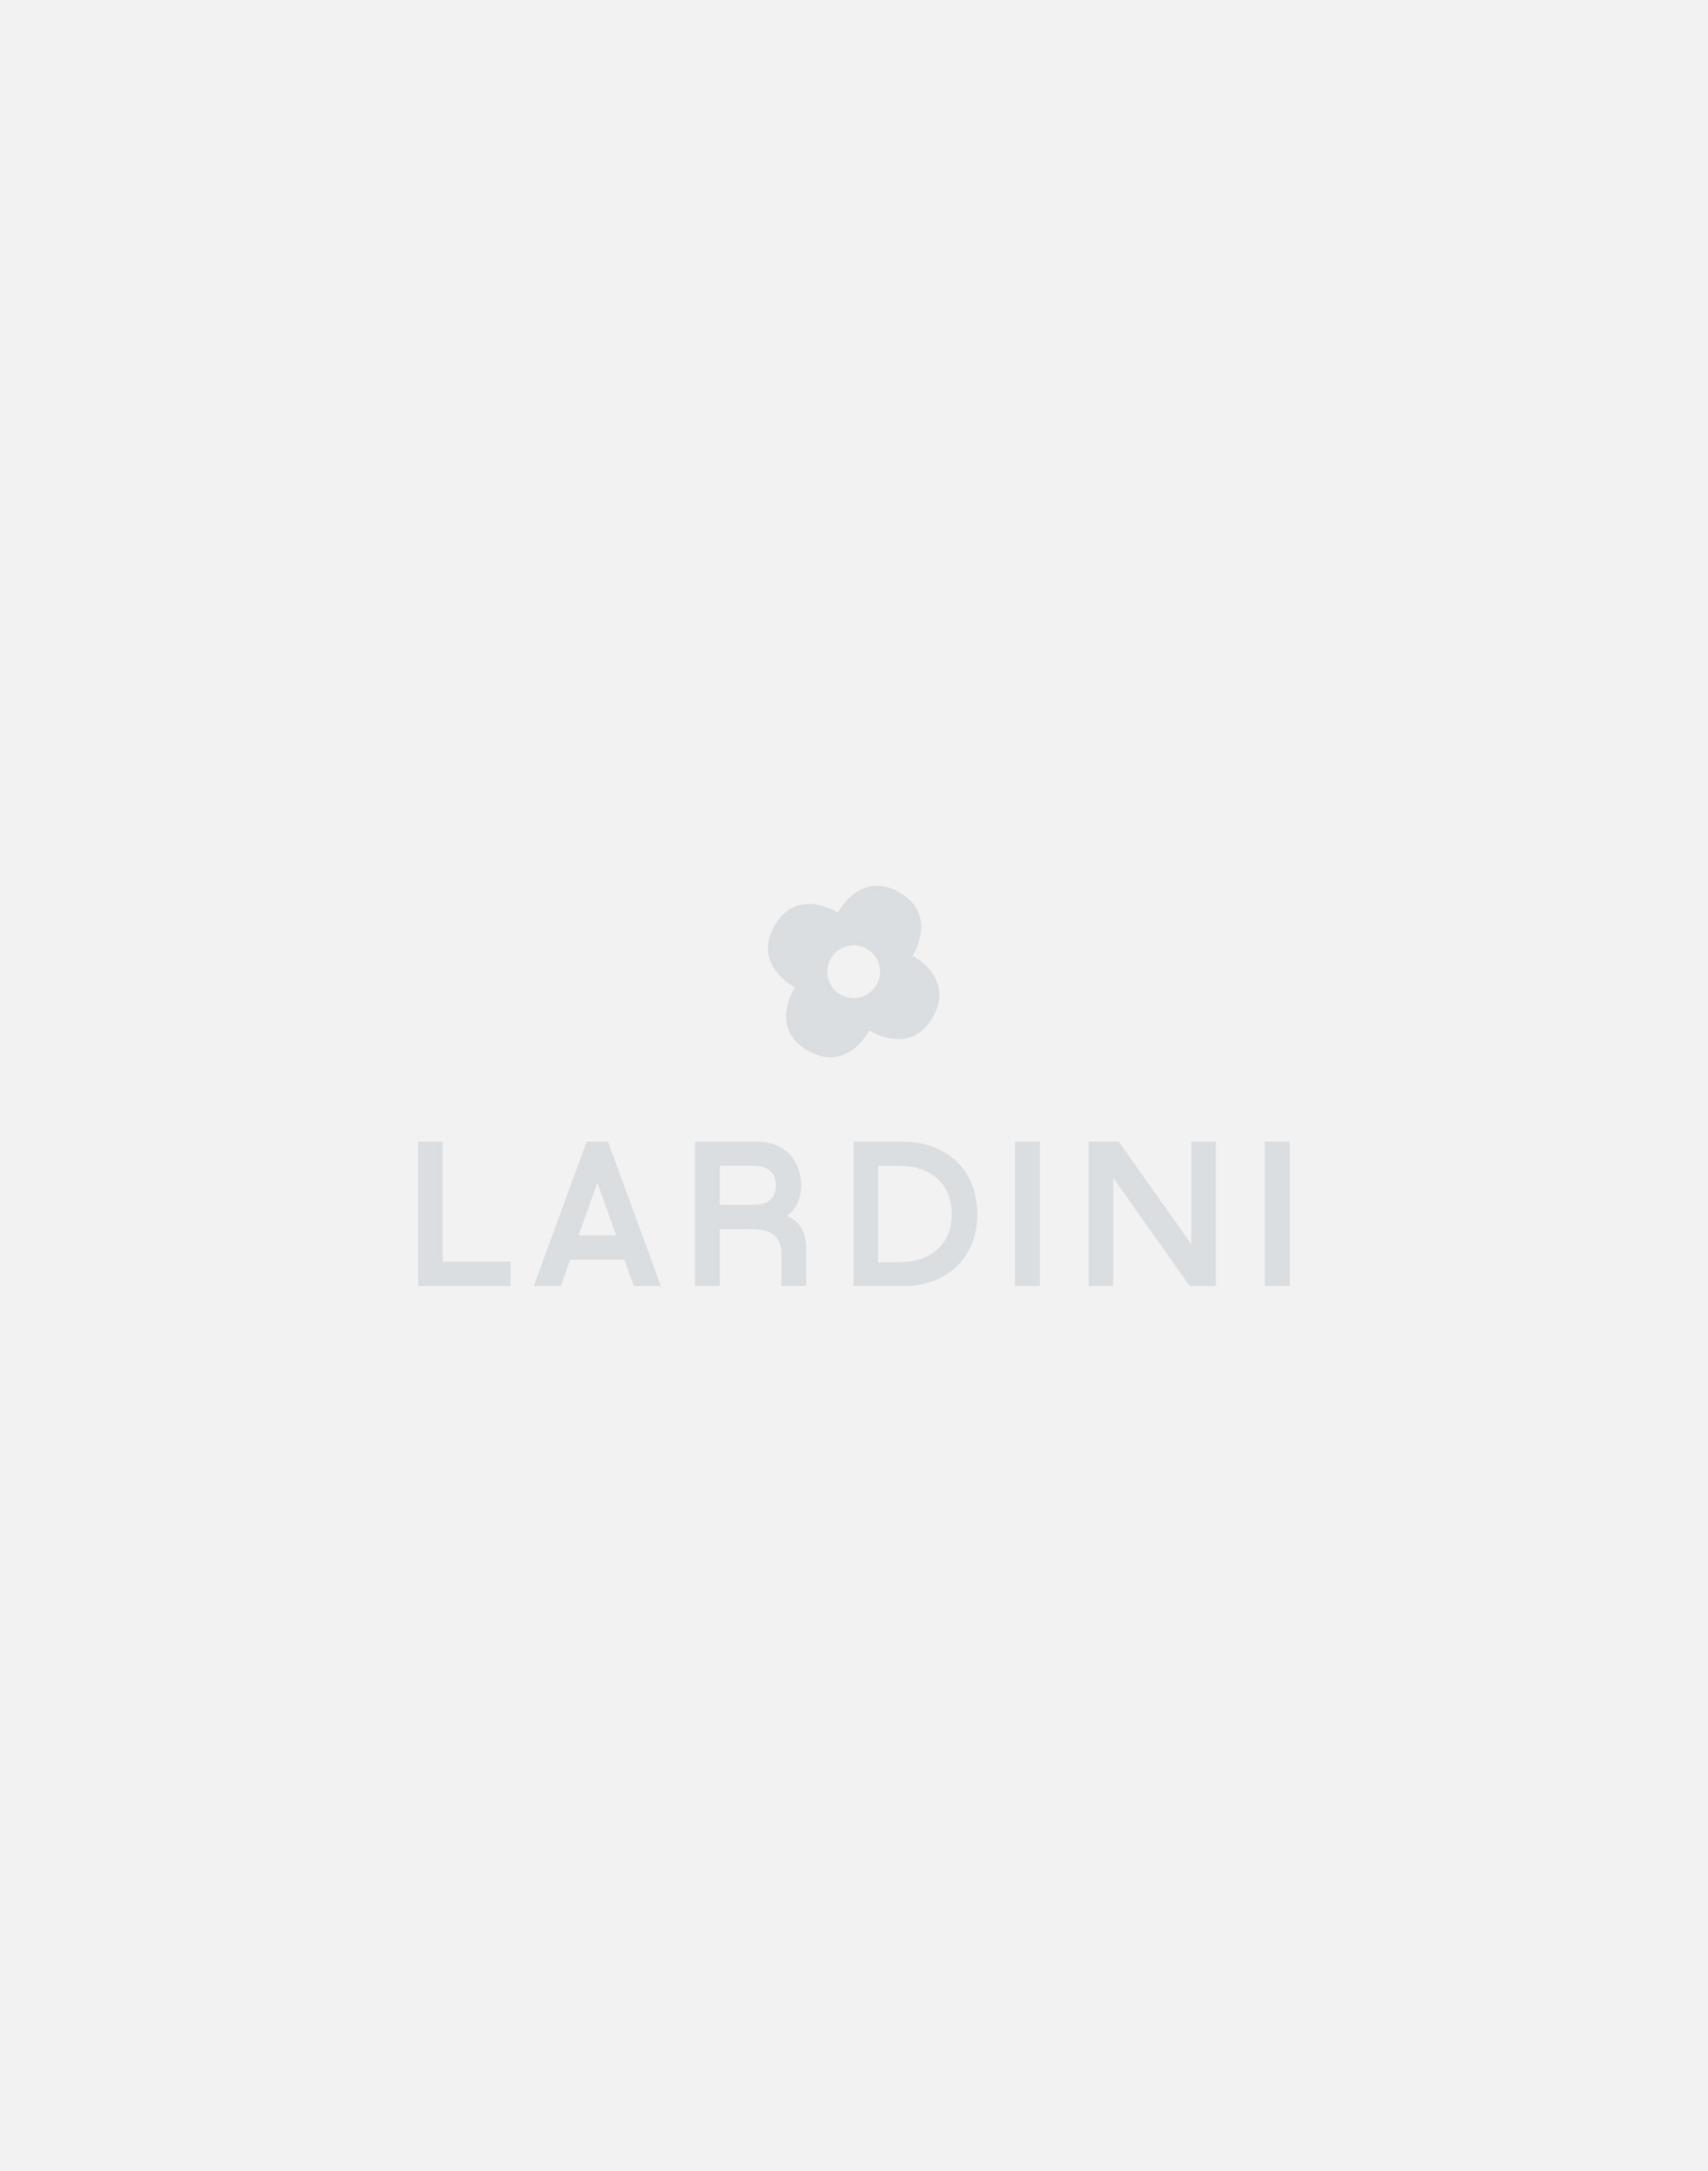 Leather slip-on sneaker - Lardini by Yosuke Aizawa 3